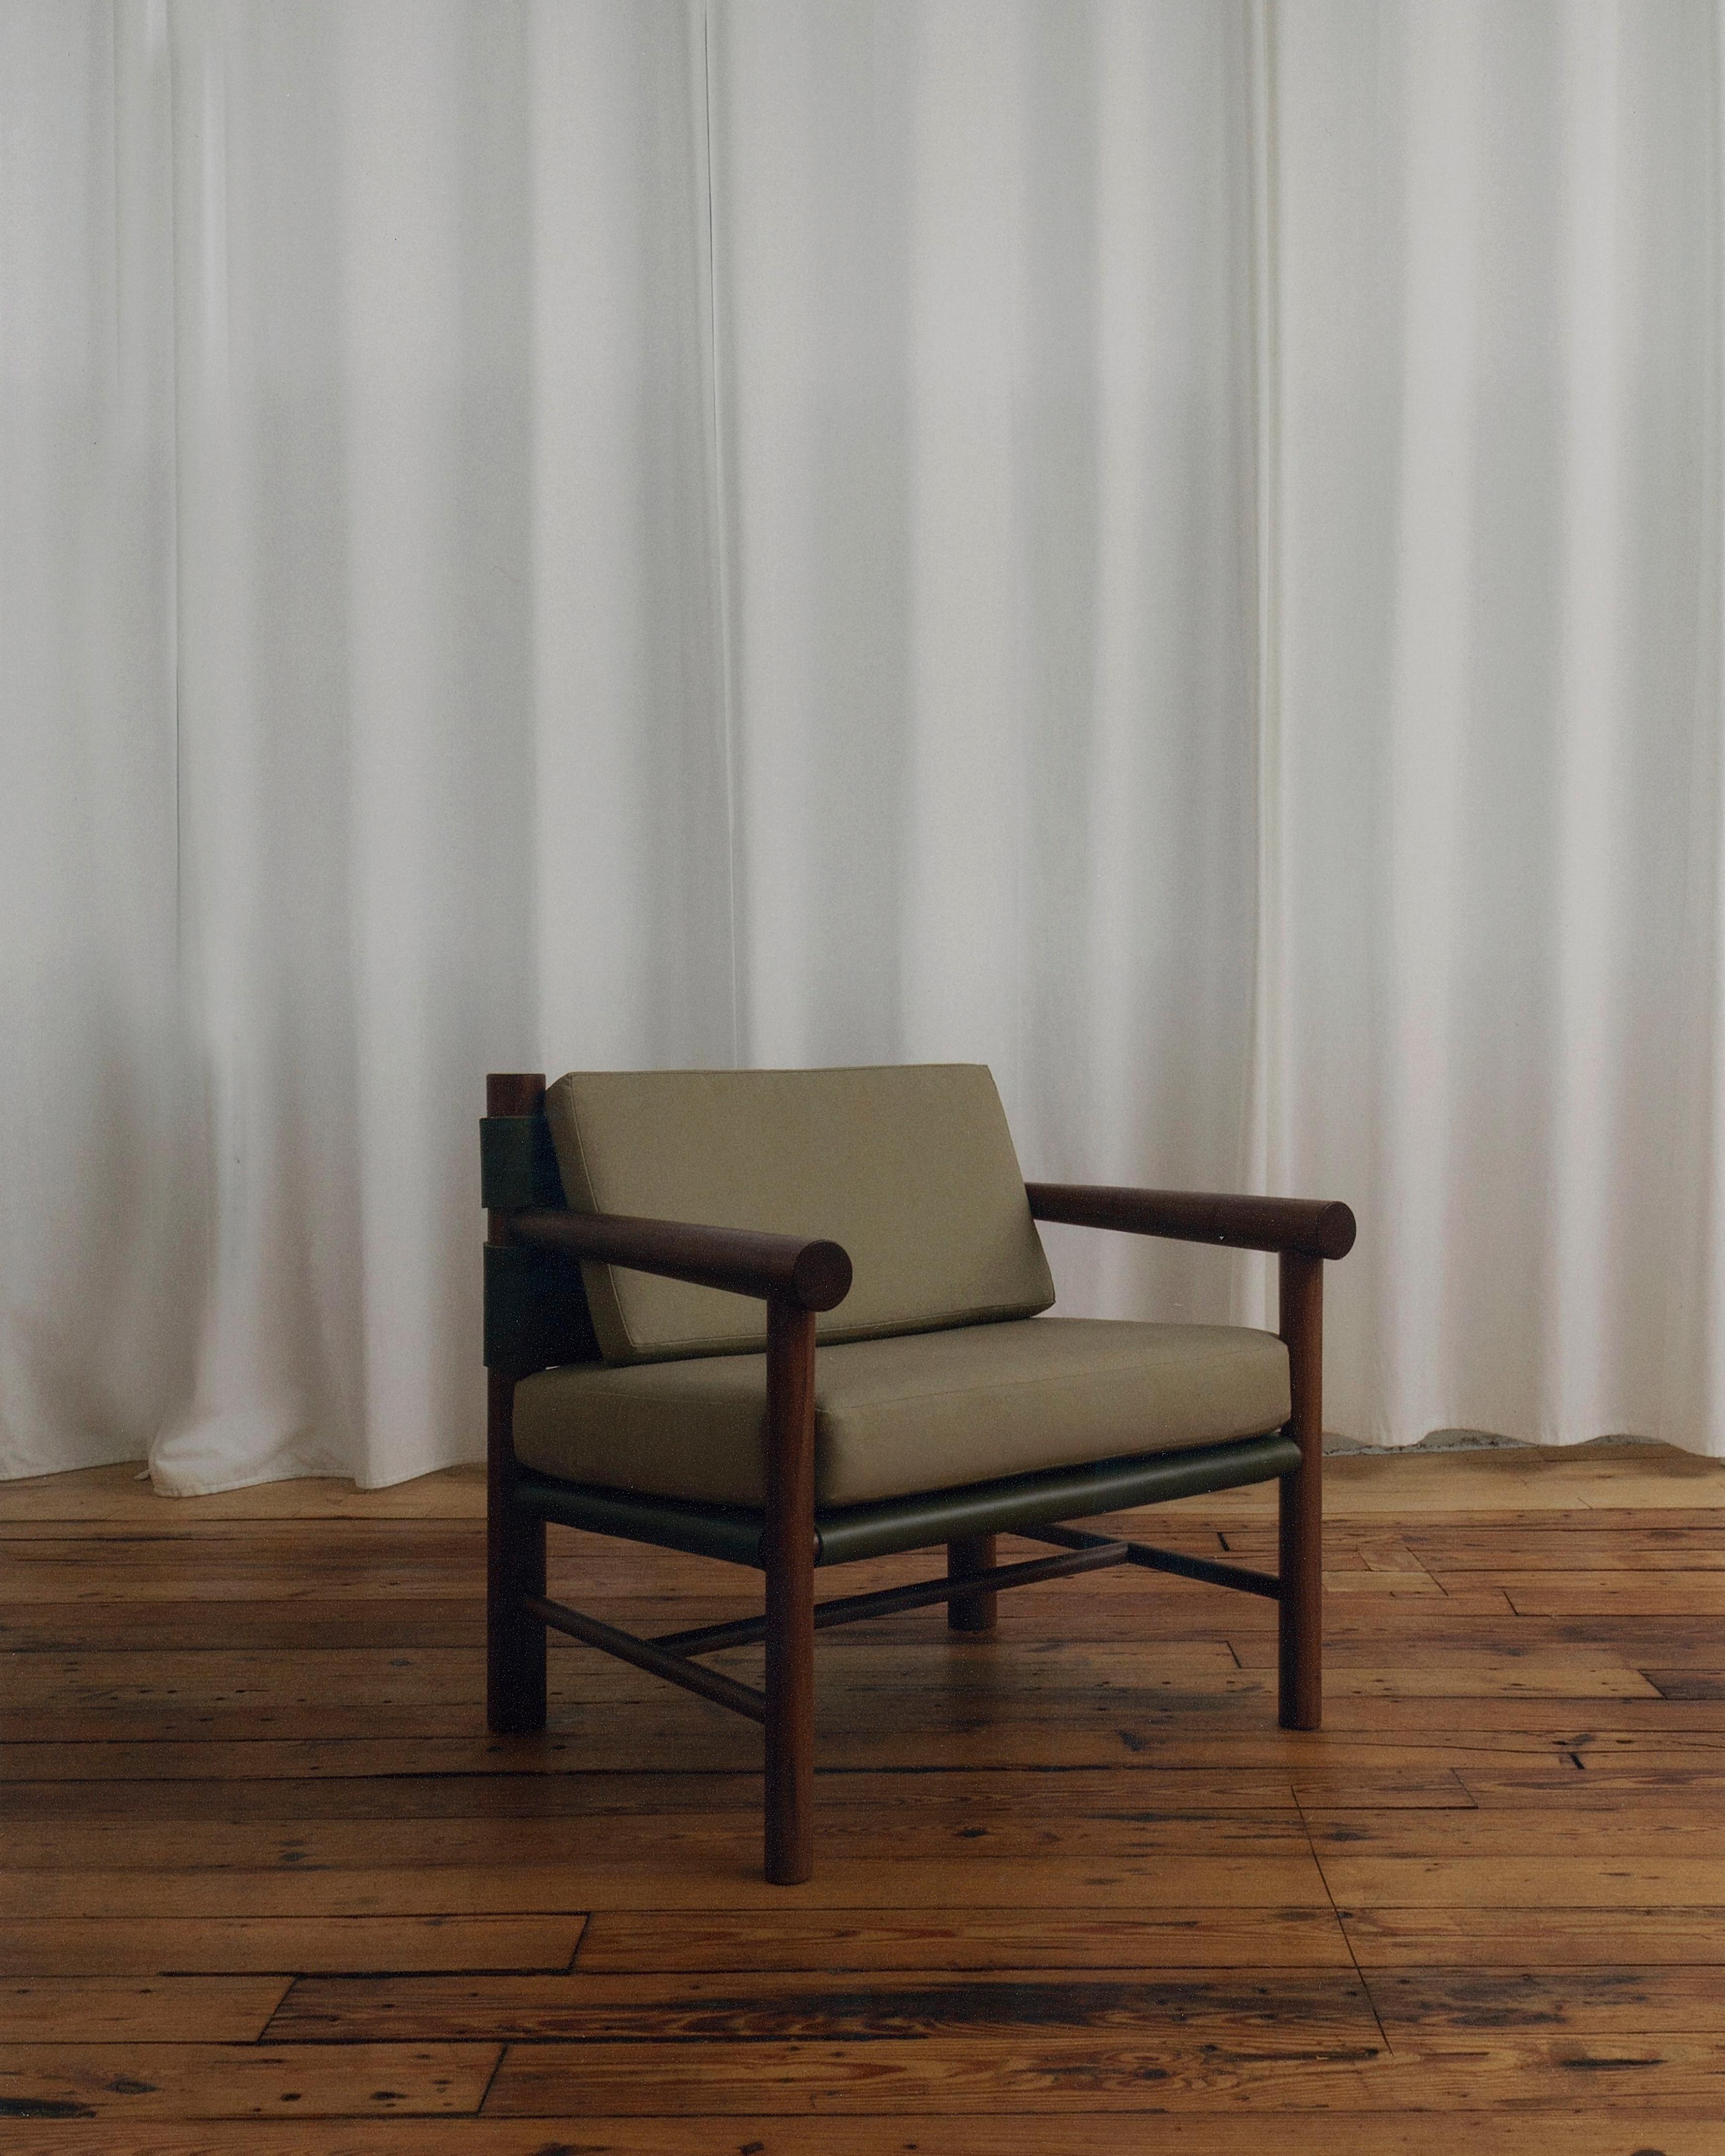 Inspirée par le mobilier utilitaire, la chaise longue Gradual Lounge Chair joue avec les proportions de pièces de bois tournées de différentes tailles. Les pieds avant et arrière sont de diamètres différents, et le dos se rétrécit progressivement